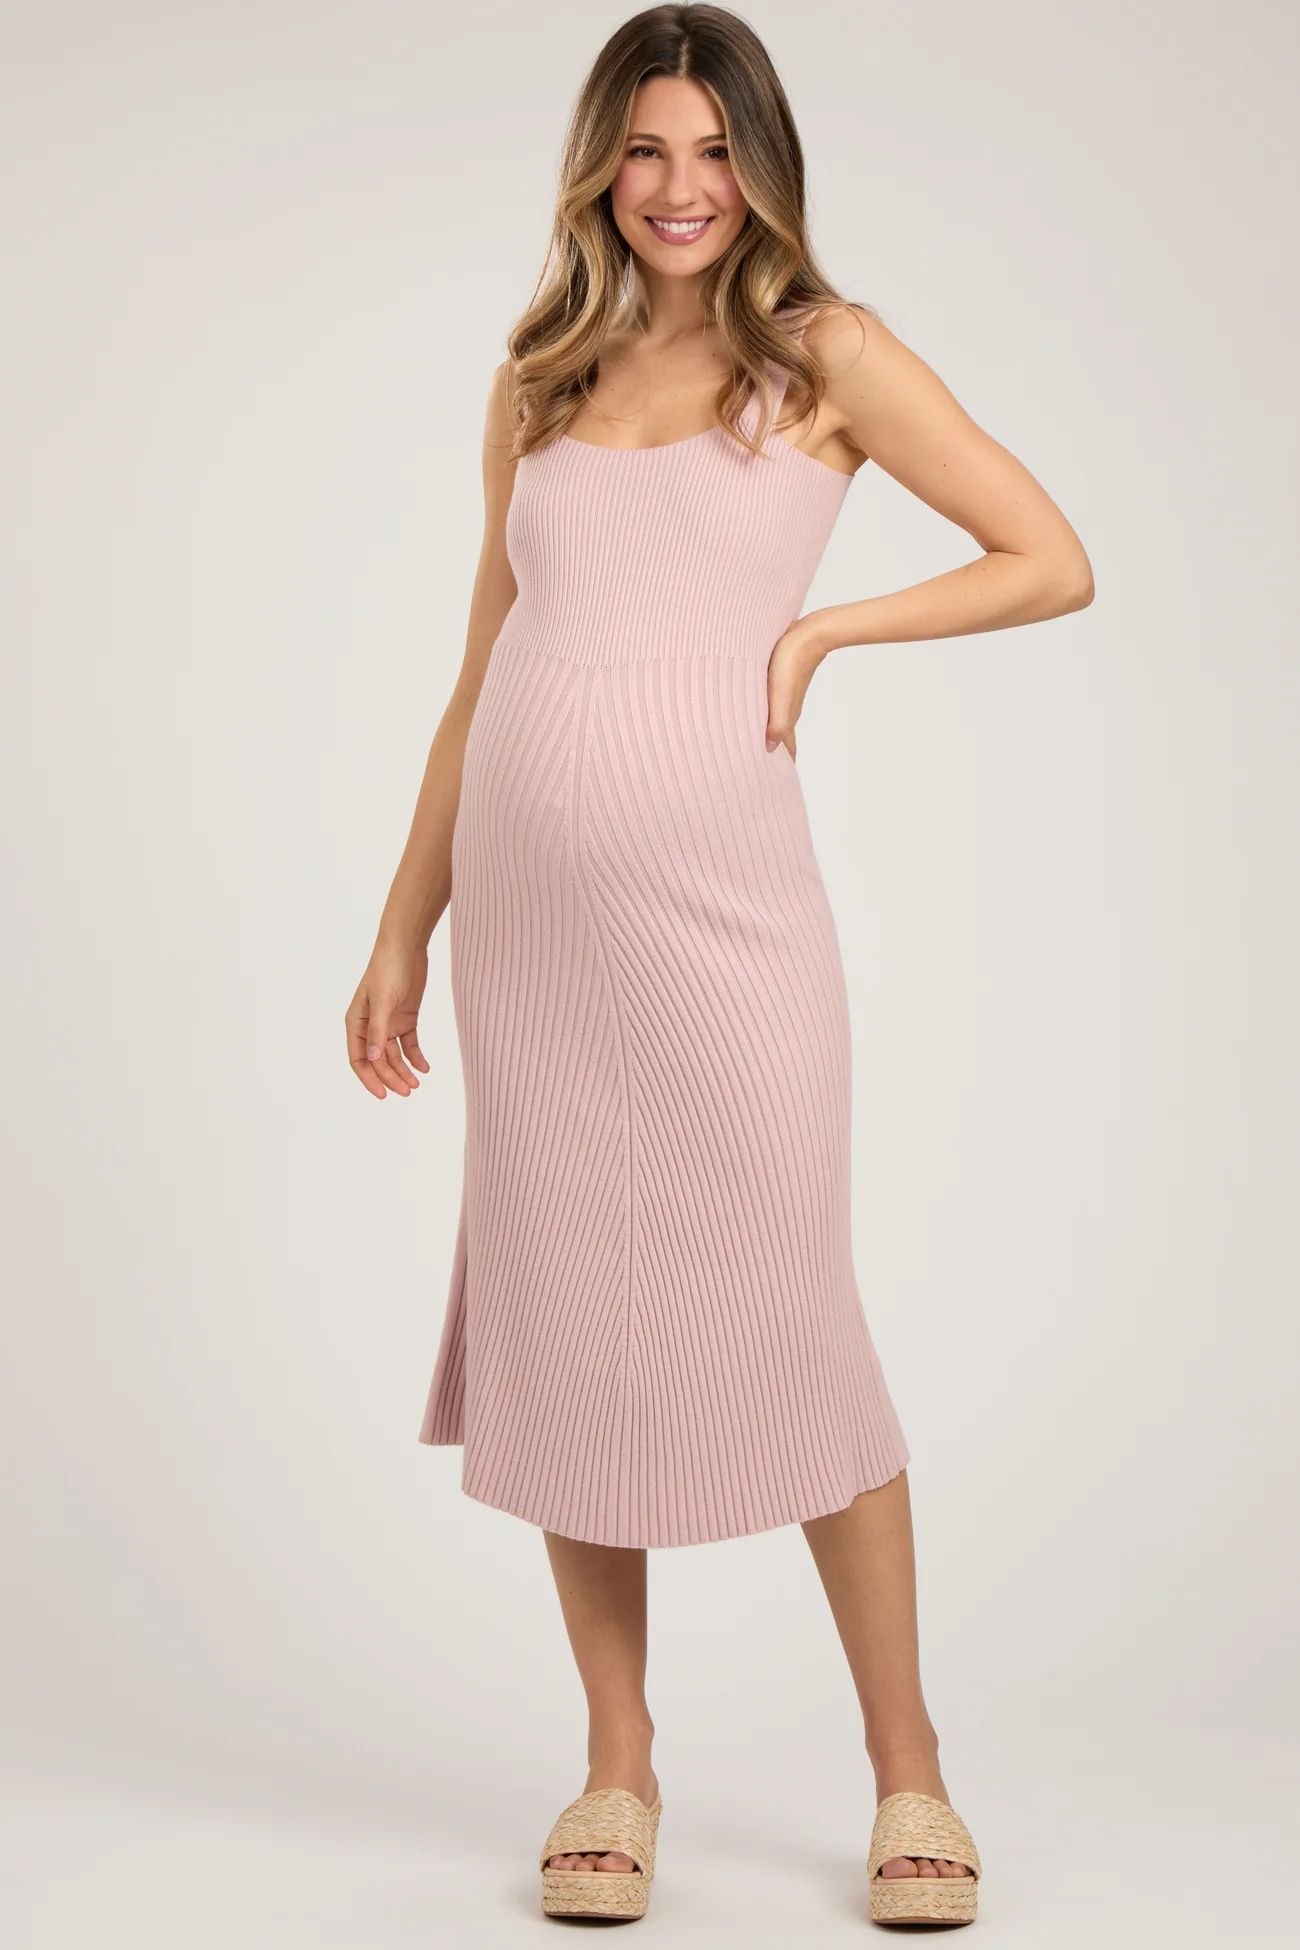 Light Pink Sweater Knit A-Line Maternity Midi Dress | PinkBlush Maternity